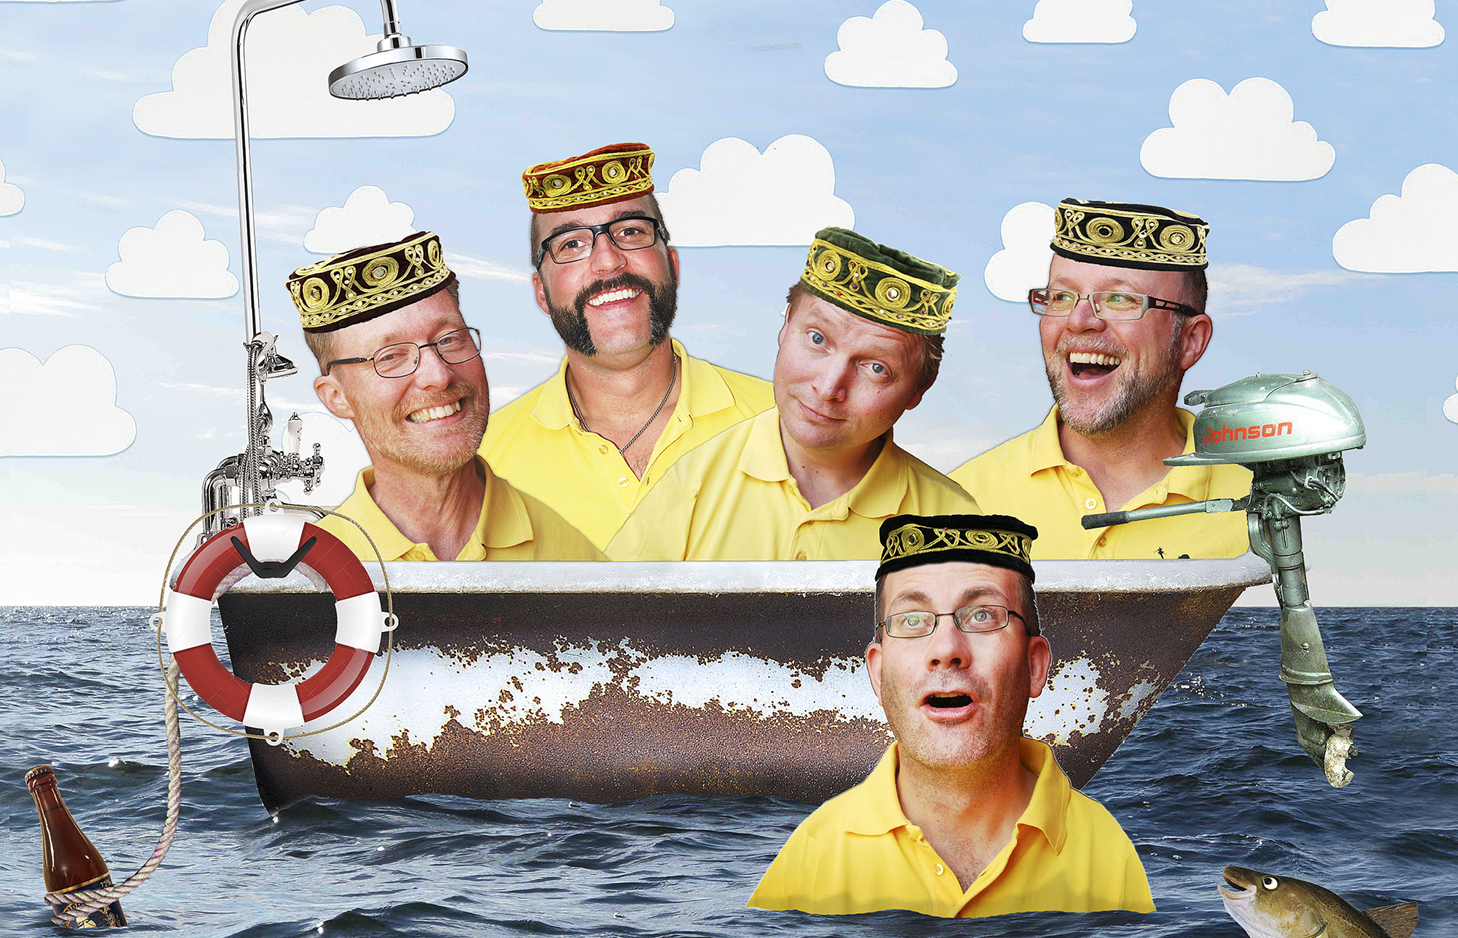 Fotomontage. Ett badkar på ett öppet hav. I badkaret sticker fyra medelålders män upp med leende munnar och huvudbonader. En man sticker upp ur havet i förgrunden